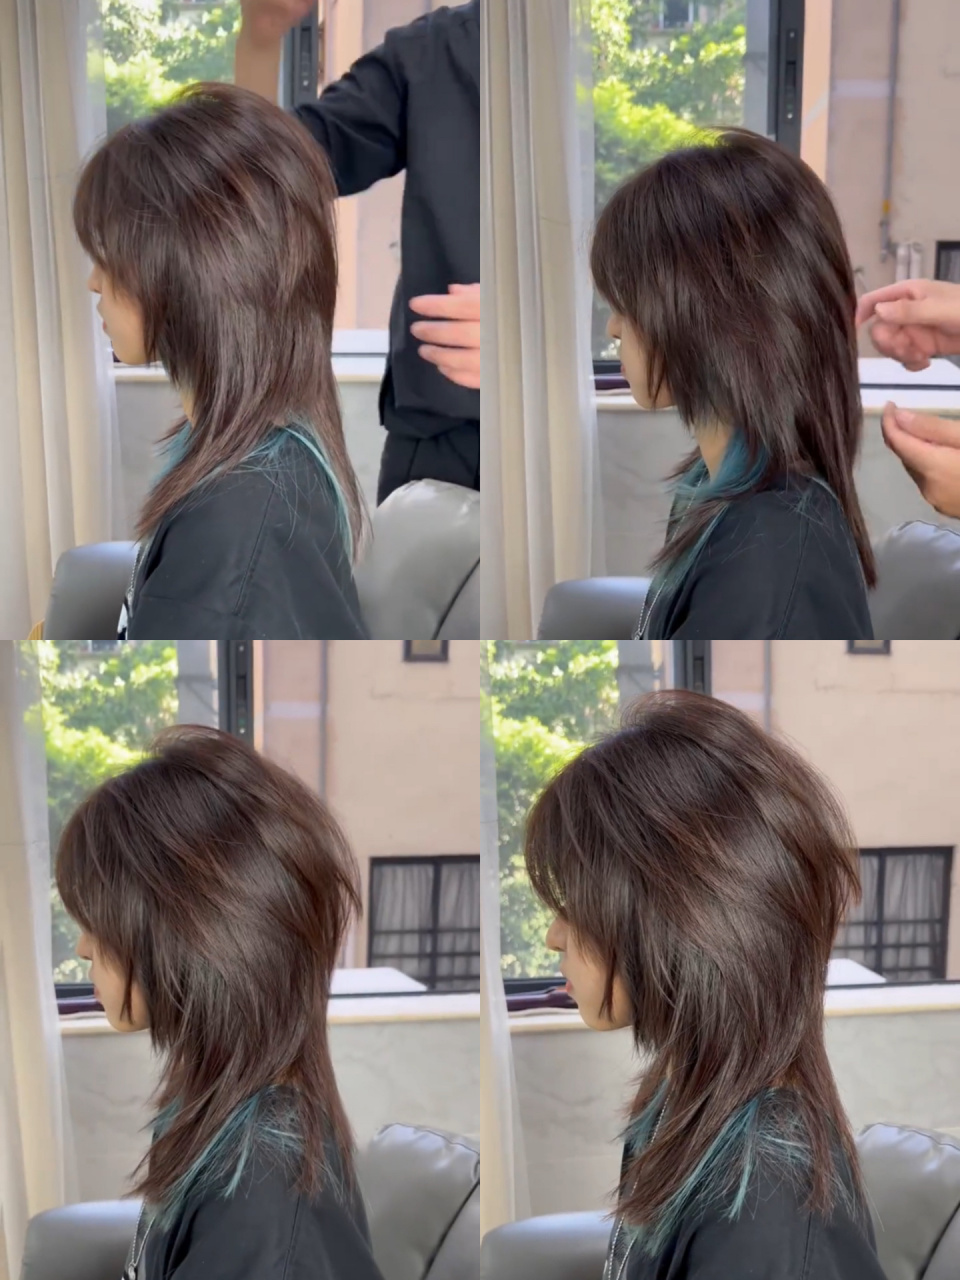 天津女生长发鲻鱼头 想改变发型,又想保留长度的可以试试这款长发